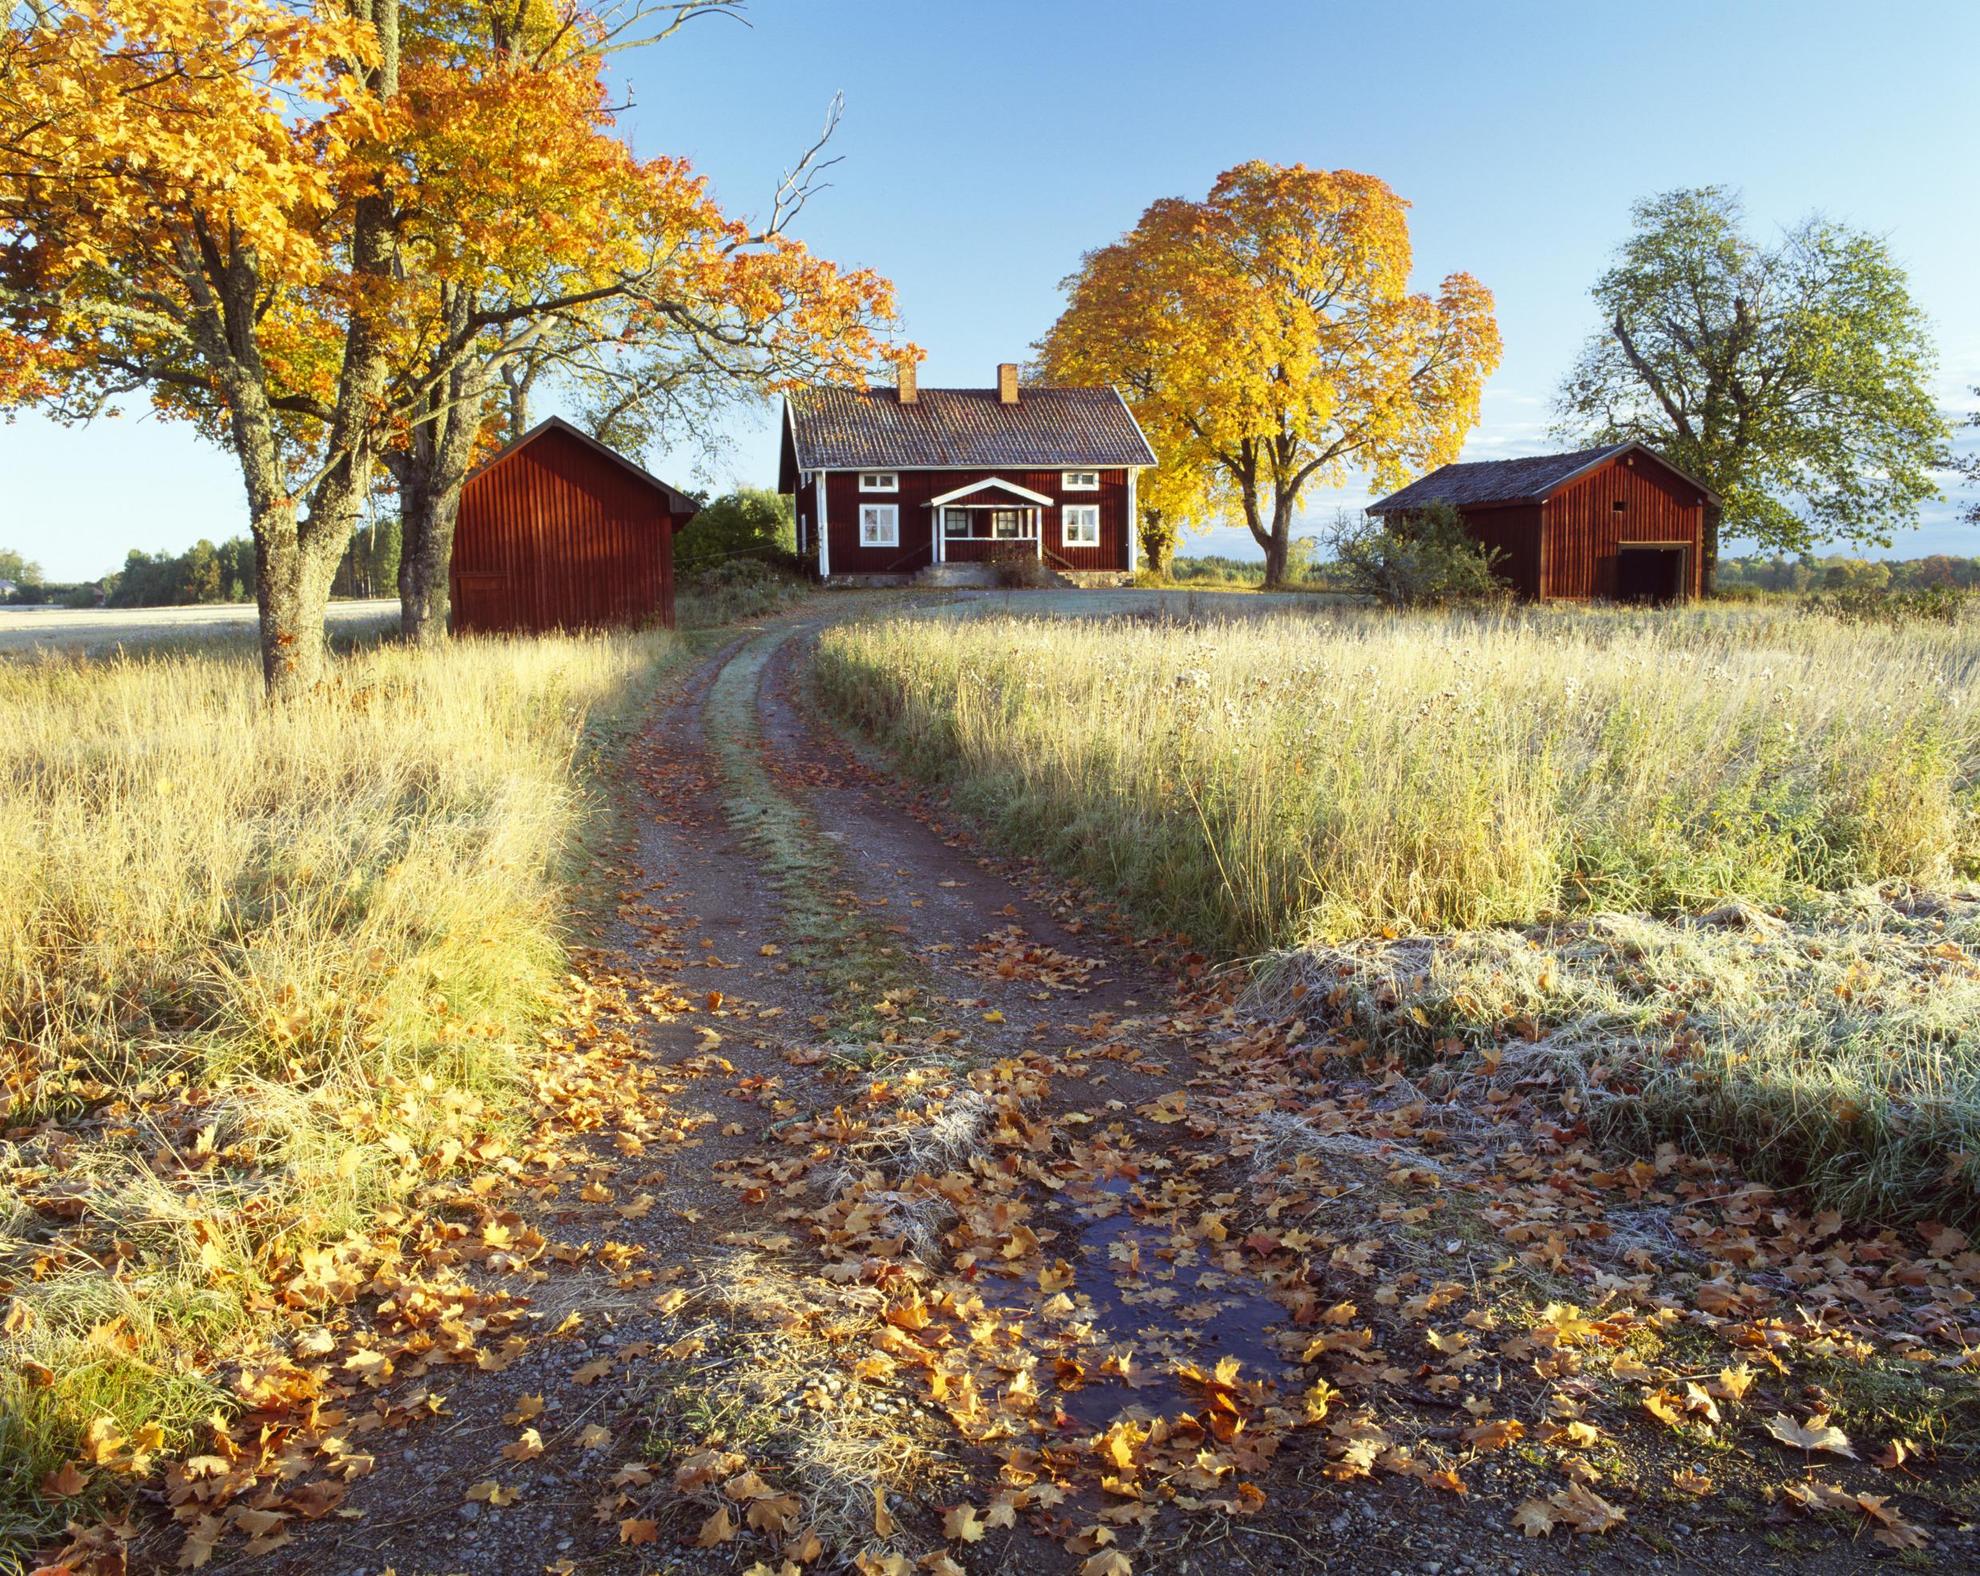 Een rode hut met witte garnituren is omgeven door weilanden en enkele bomen. Het is herfst en de bladeren zijn geel en oranje geworden.